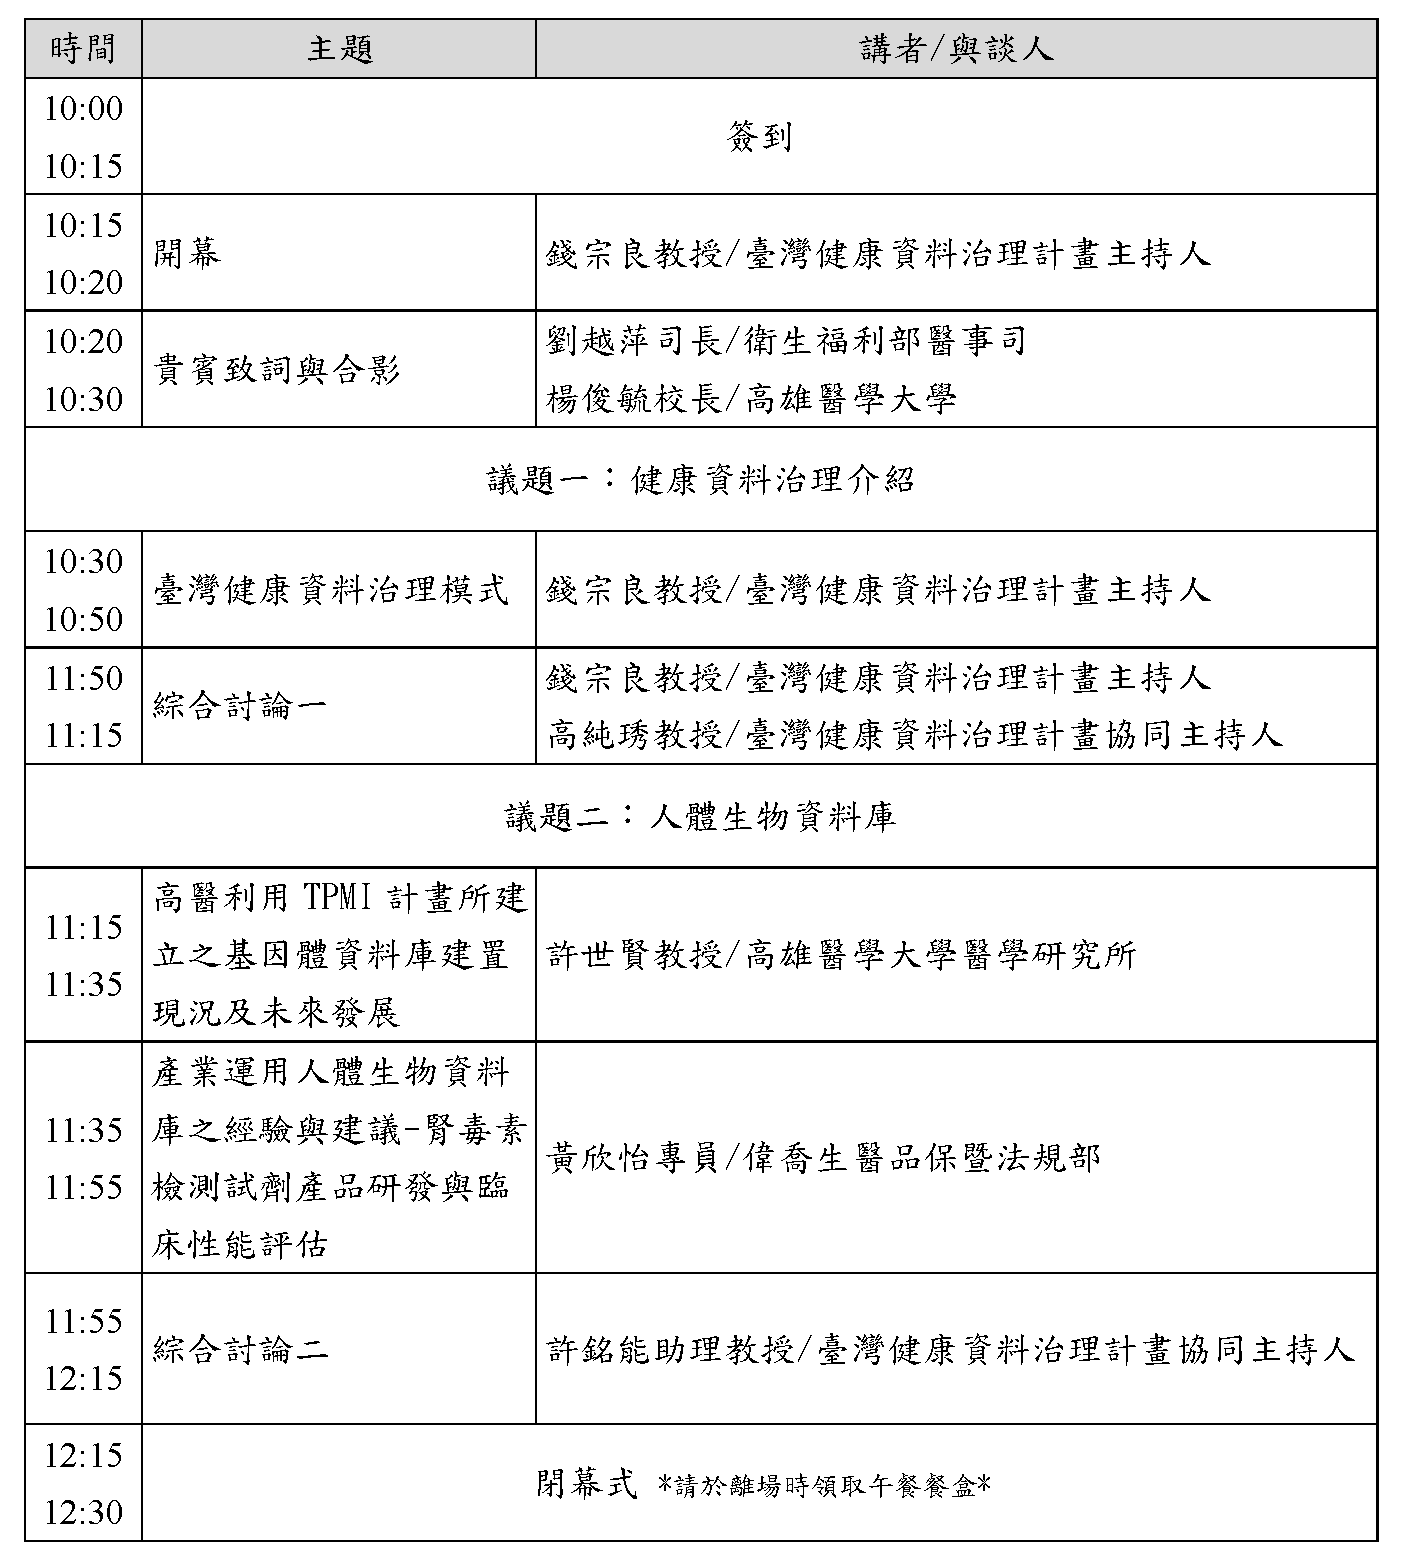 1121102臺灣健康資料治理與生物資料庫運作座談會議程01